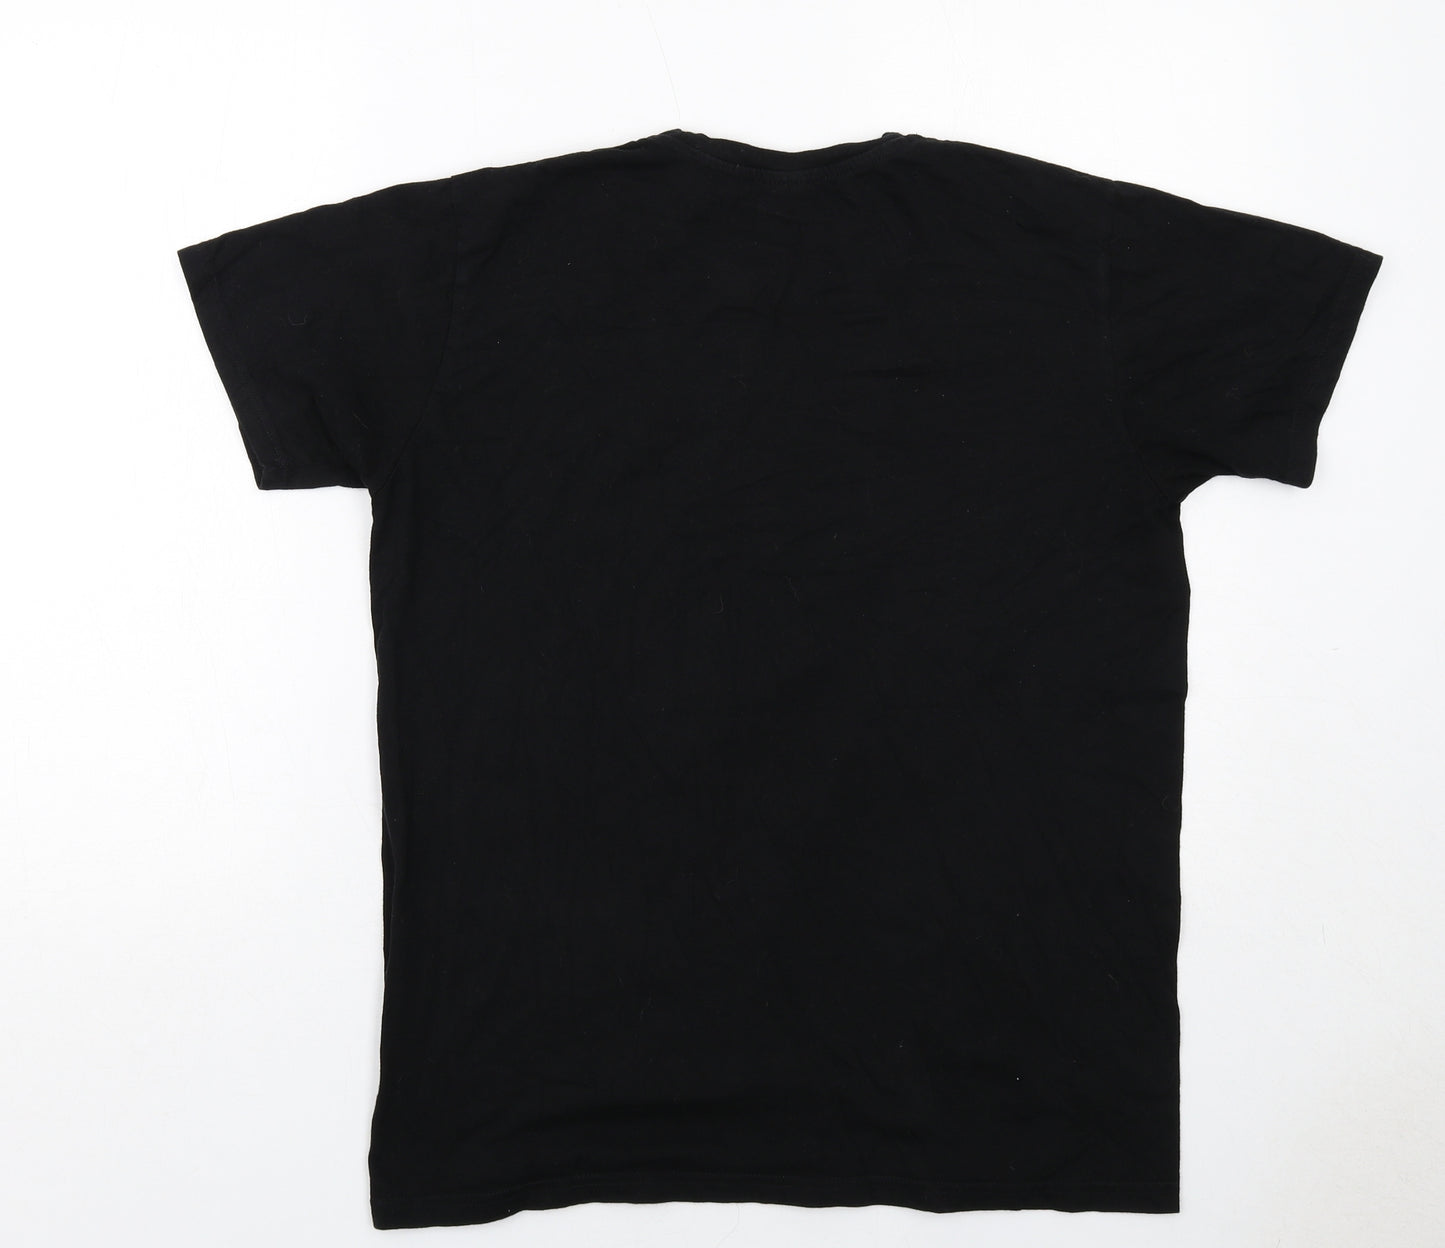 B&C Collection Mens Black Cotton T-Shirt Size M Round Neck